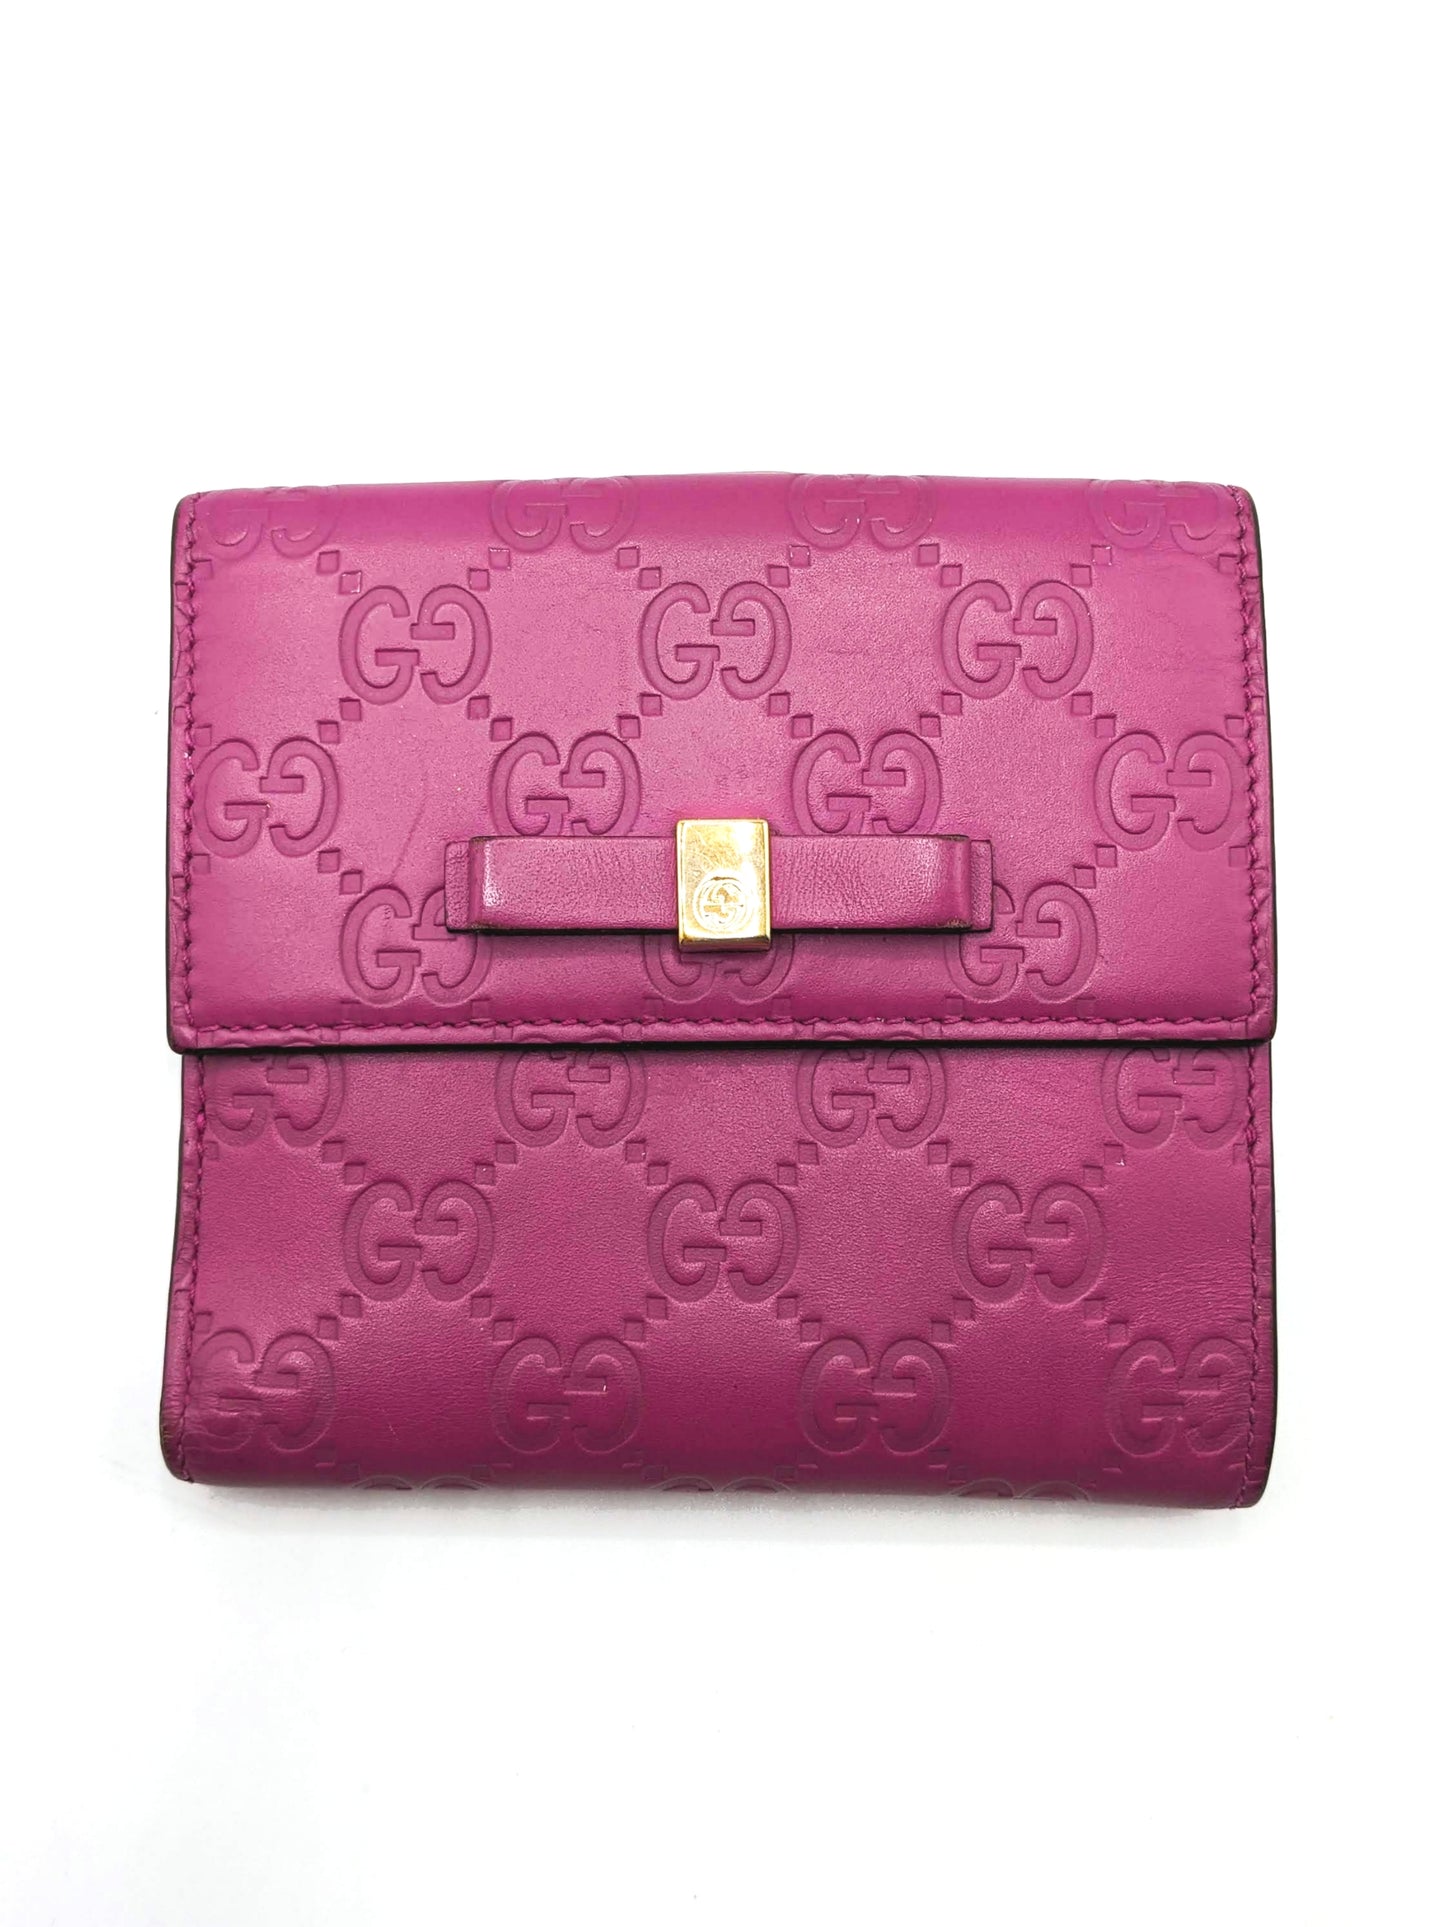 Gucci Fuschia Compact Wallet